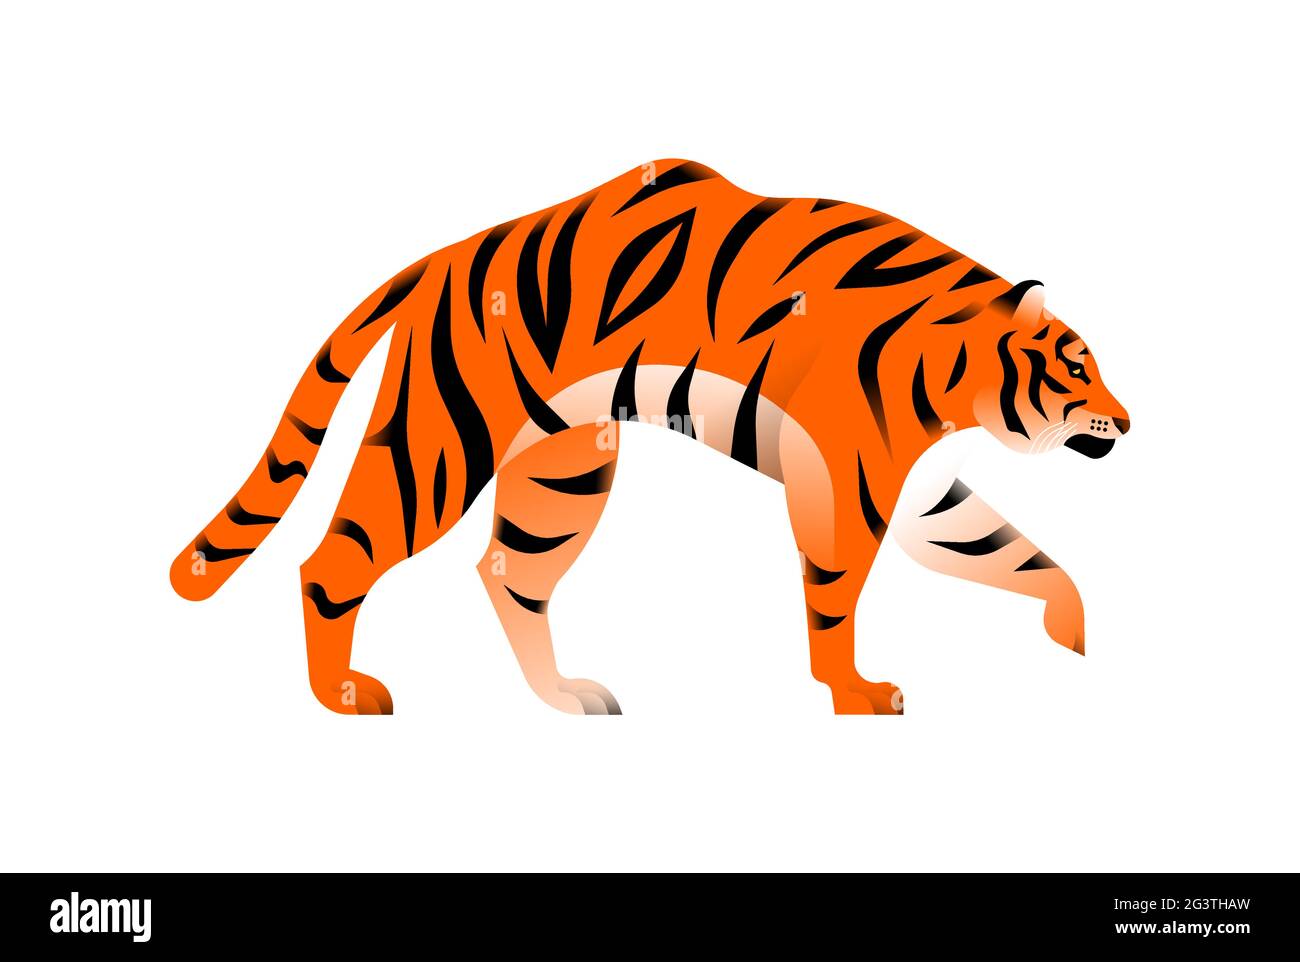 Bengalische Tiger-Illustration auf isoliertem weißem Hintergrund. Exotisches gefährdetes Dschungeltierkonzept. Pädagogisches Wildlife-Design im modernen Cartoon-Stil. Stock Vektor